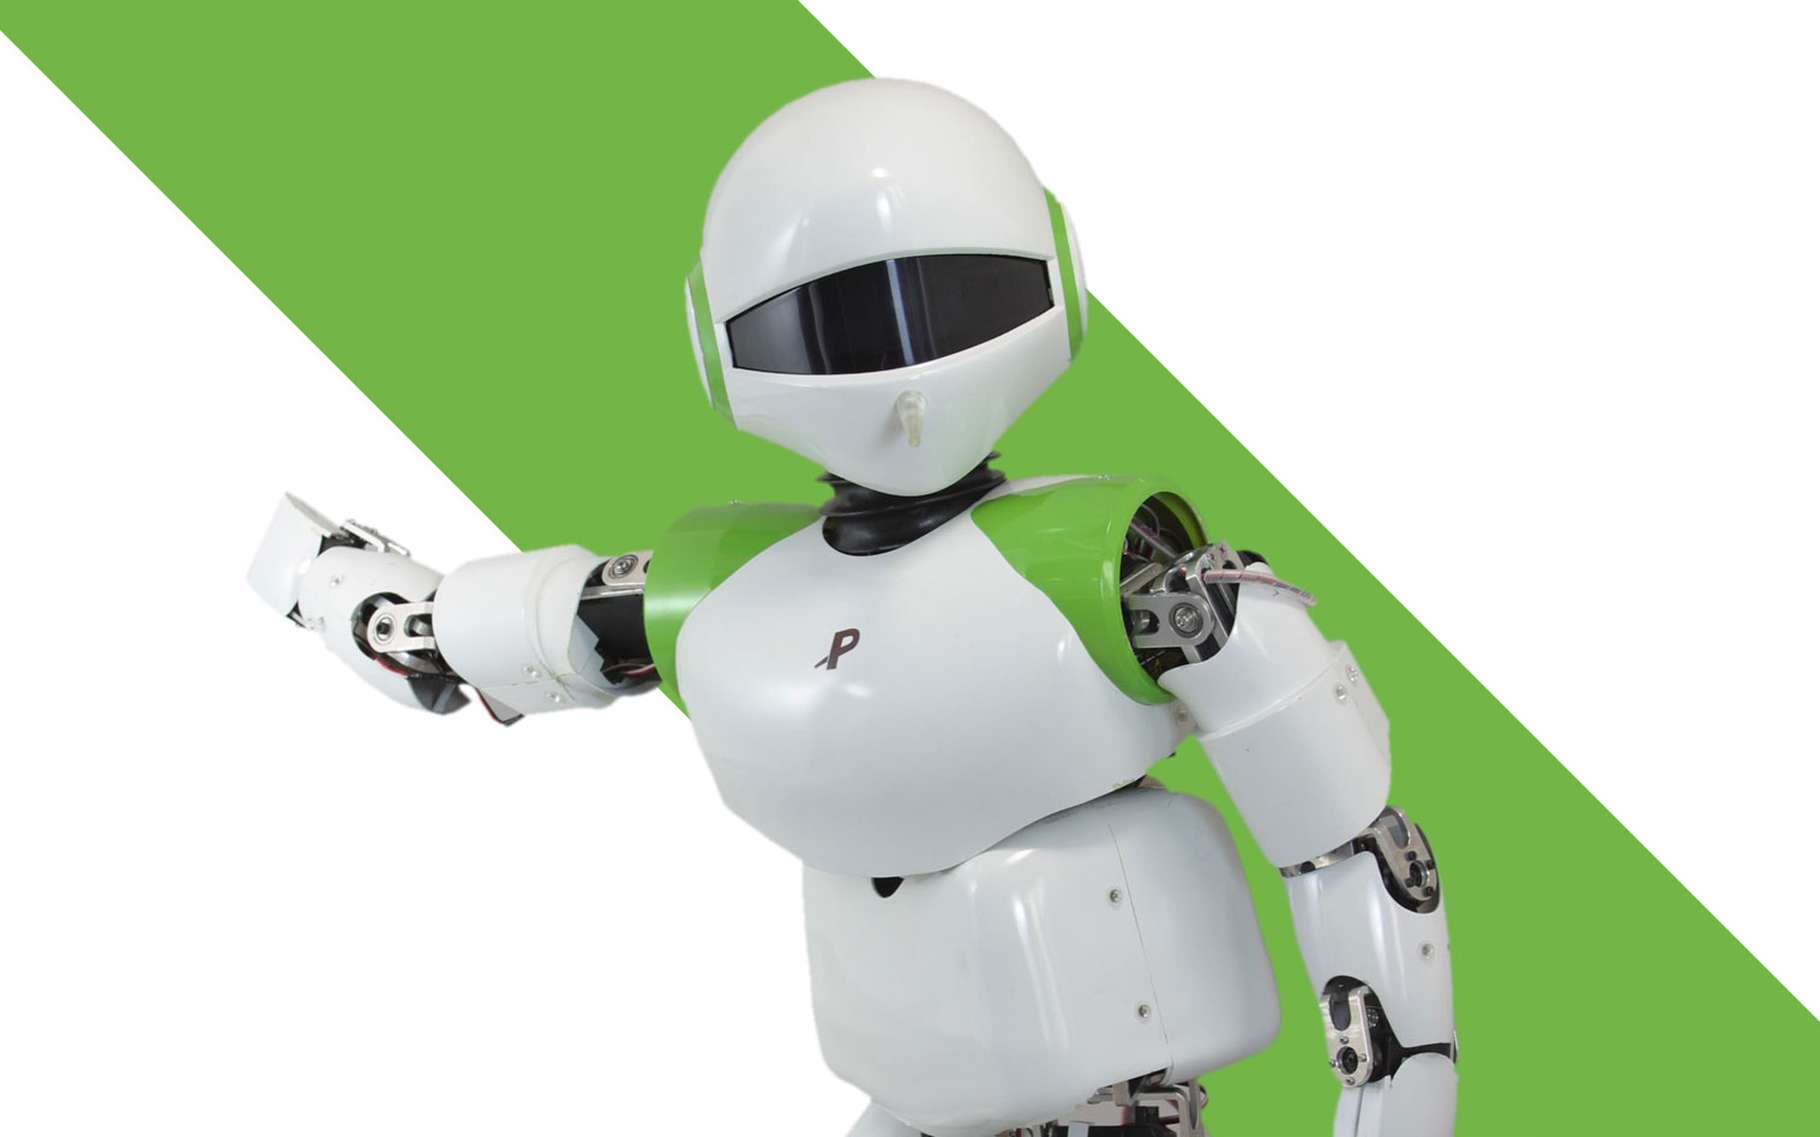 le robot humanoïde